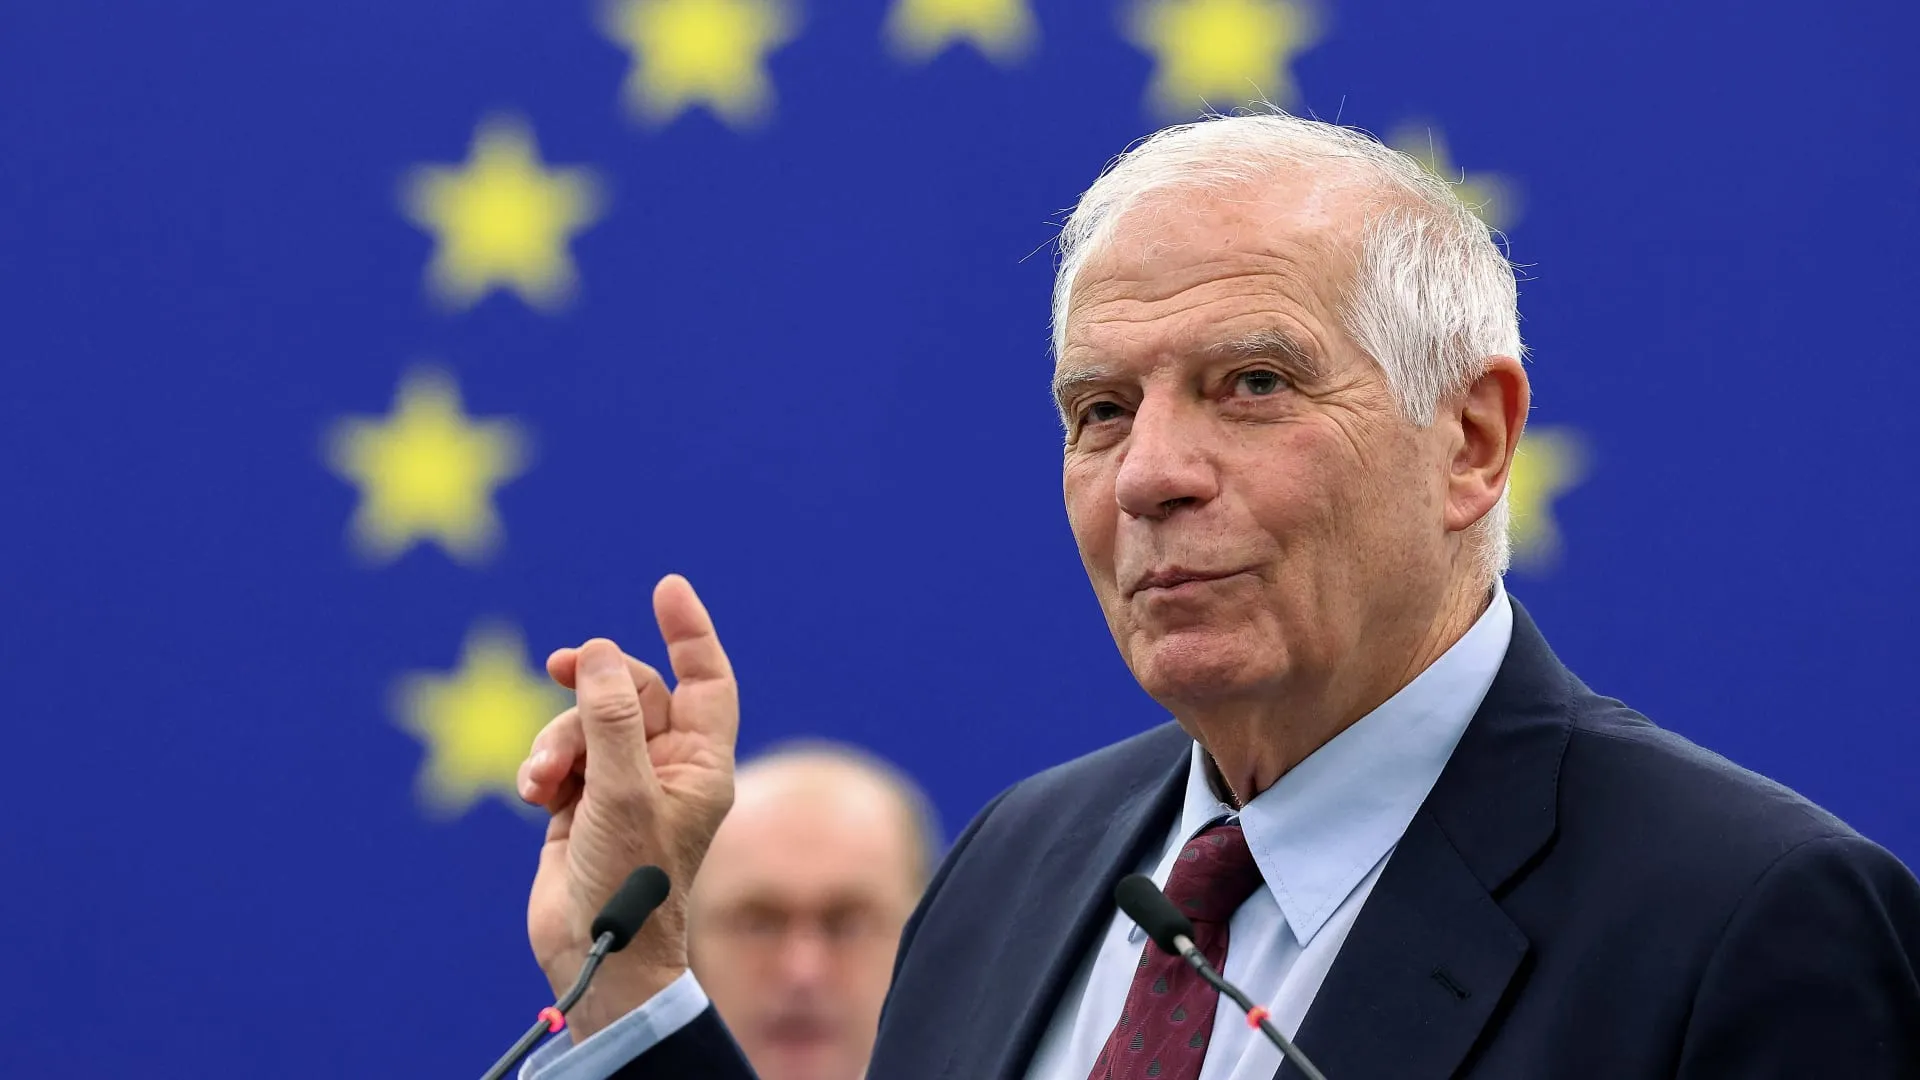 مسؤول رفيع بـ "الاتحاد الأوروبي" يُطالب بإعادة تفعيل اللجنة الدستورية السورية بشكل فوري